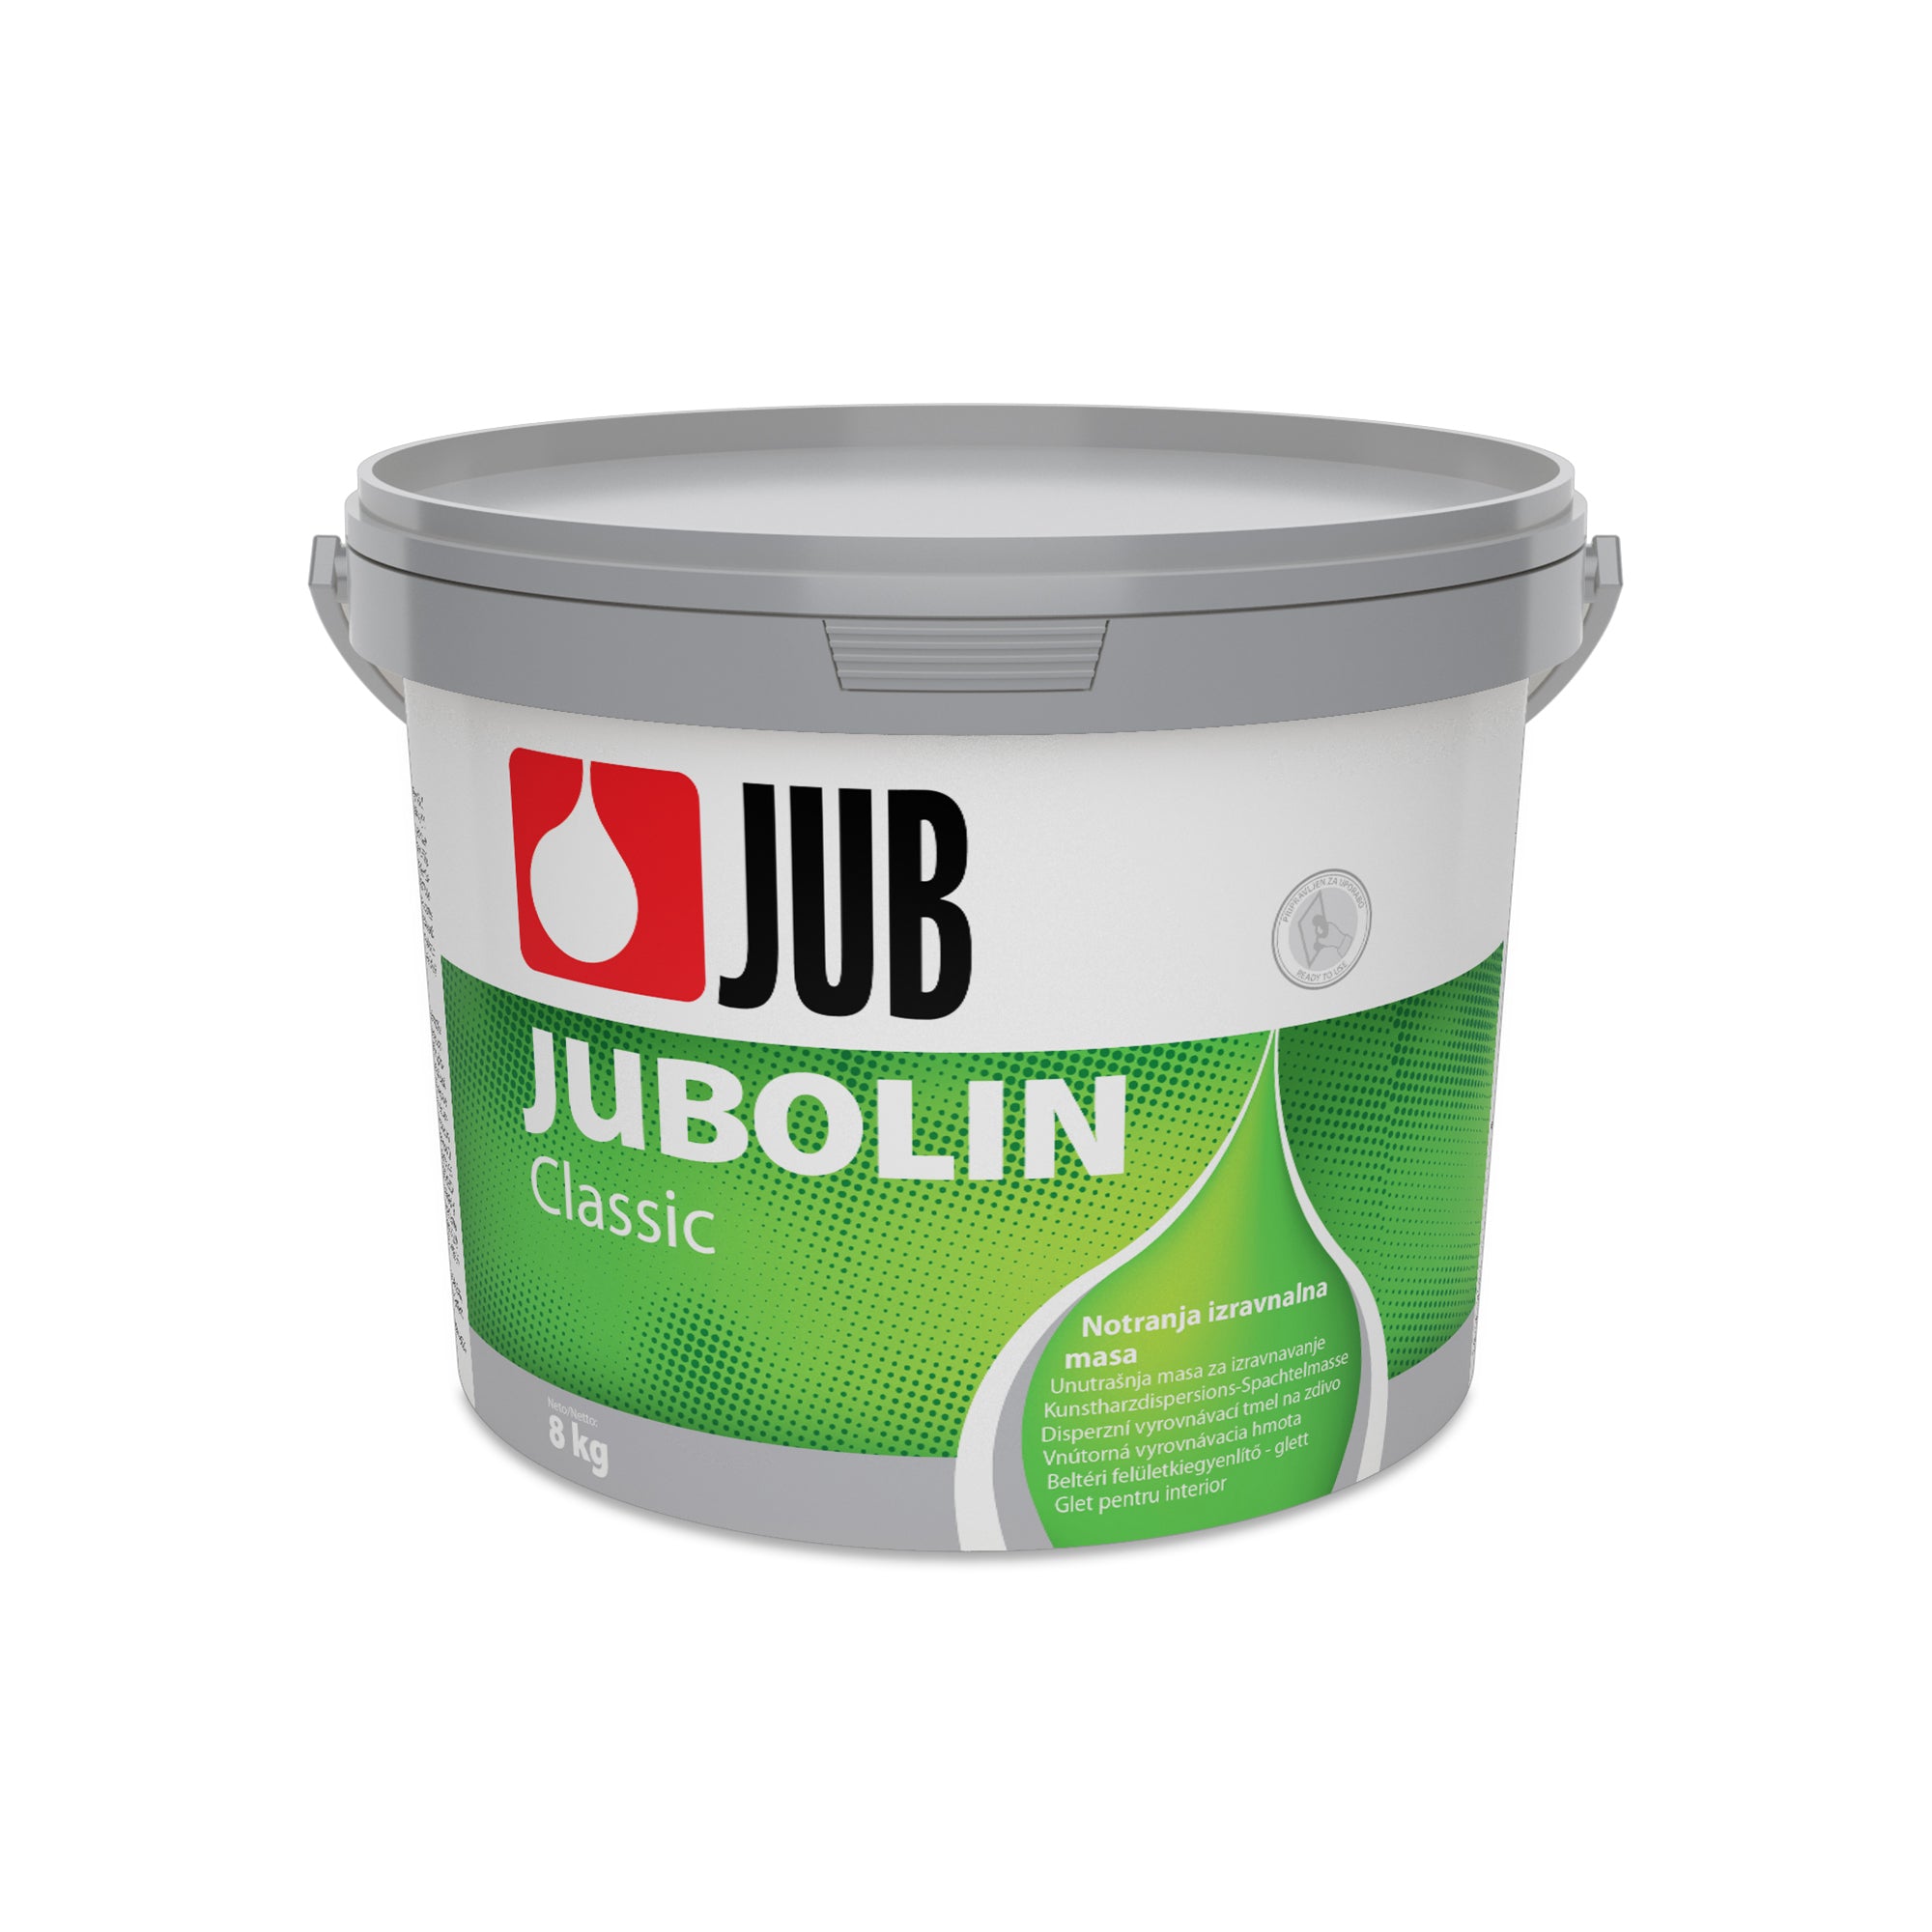 JUB JUBOLIN Classic vnútorná vyrovnávacia hmota 3 kg